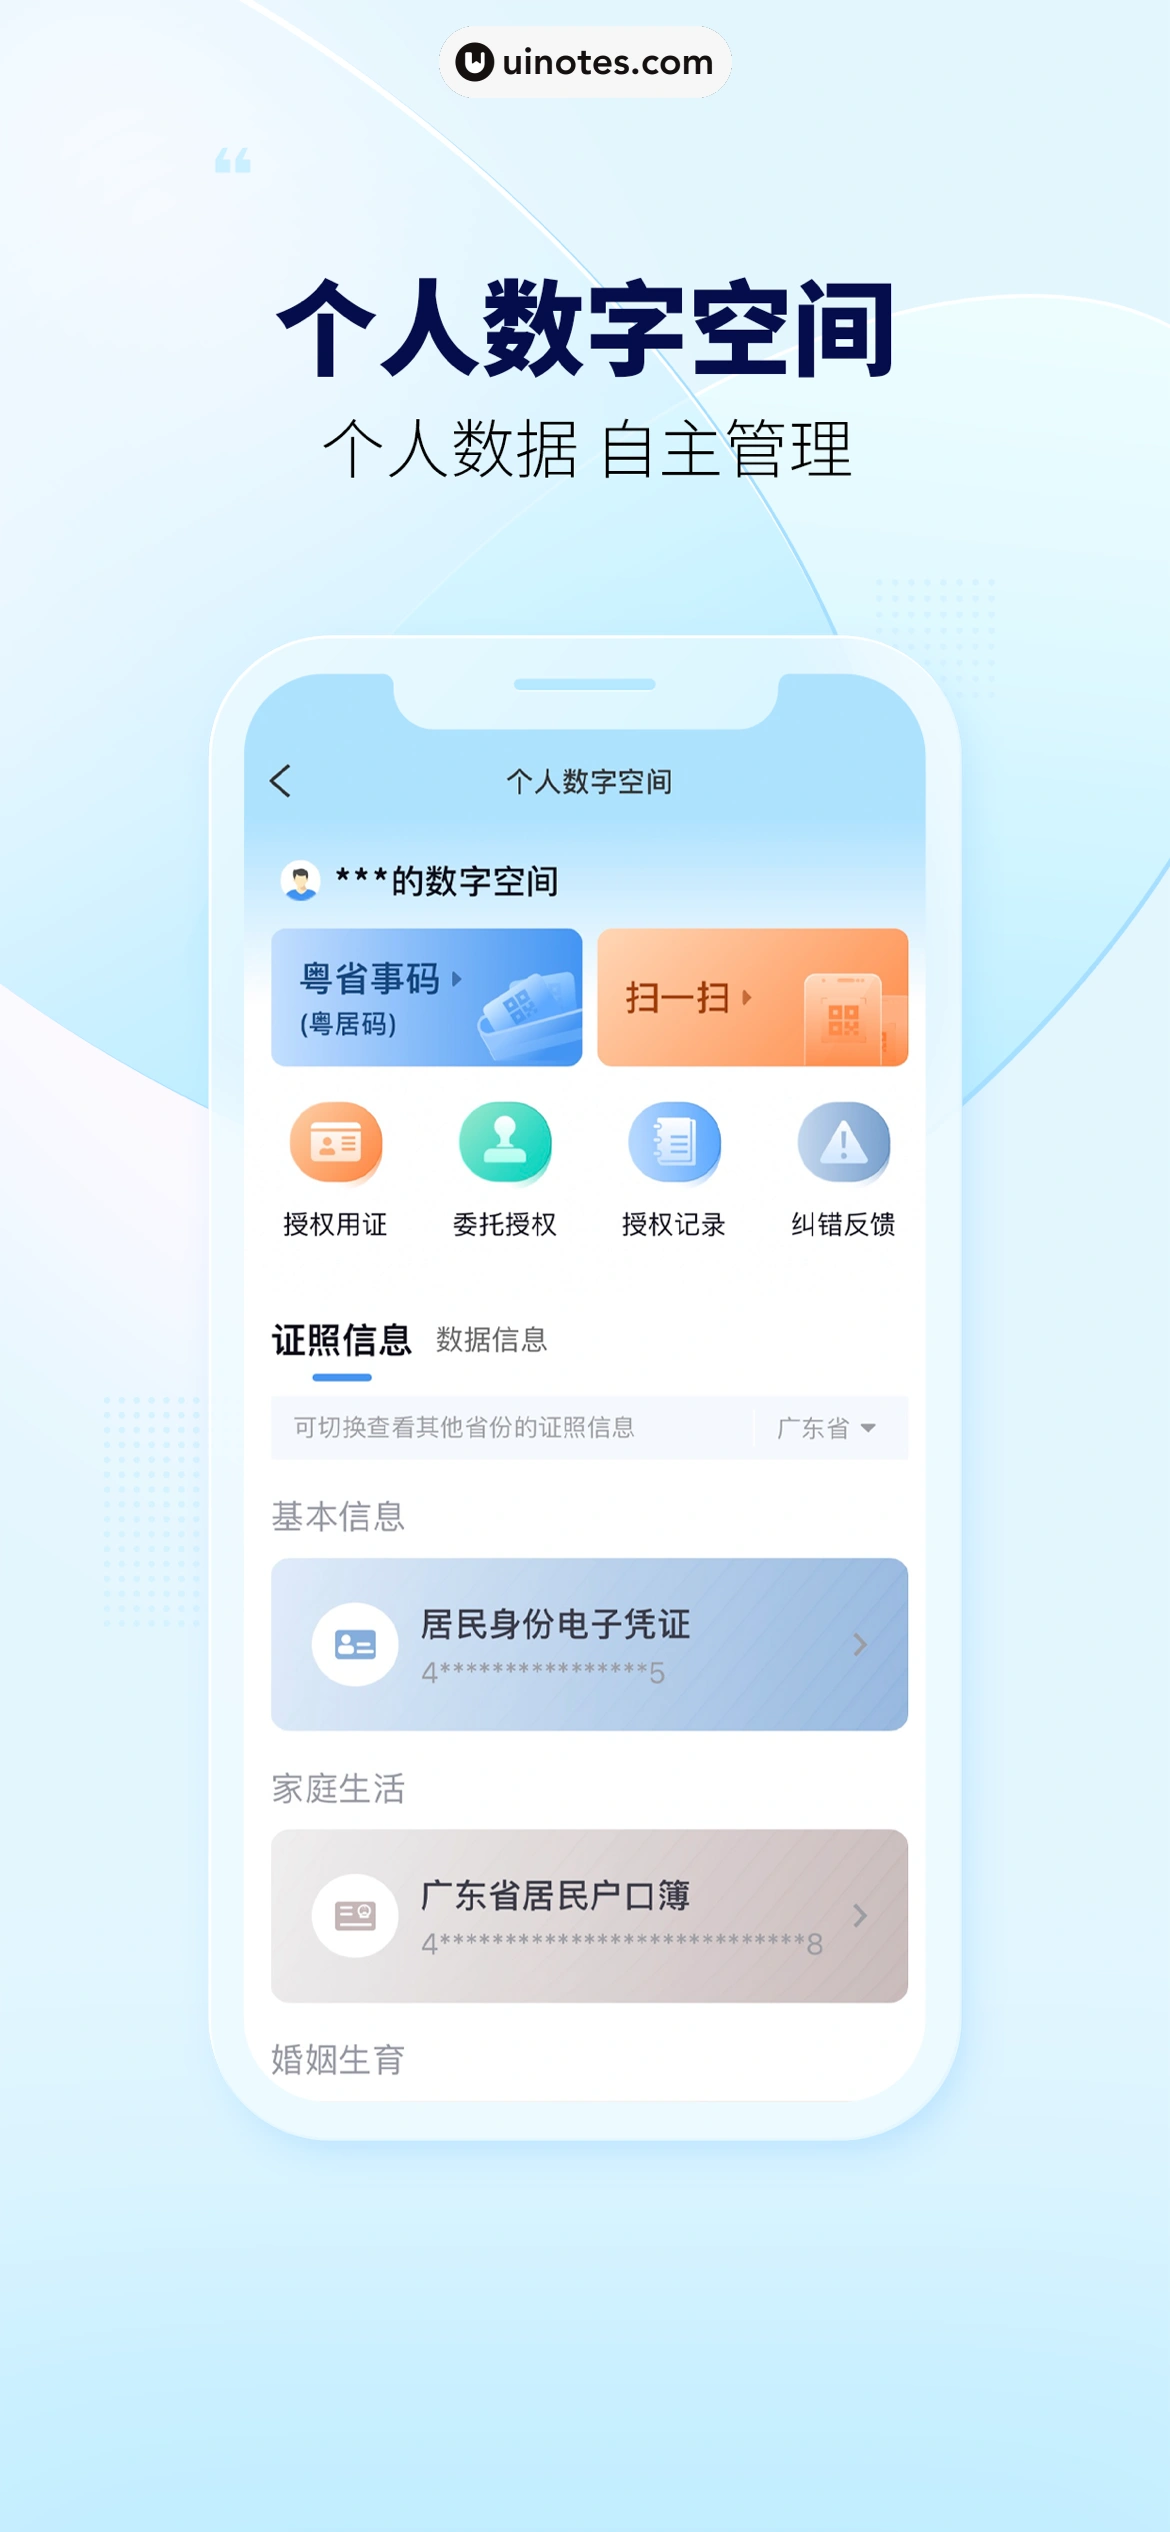 粤省事 App 截图 002 - UI Notes